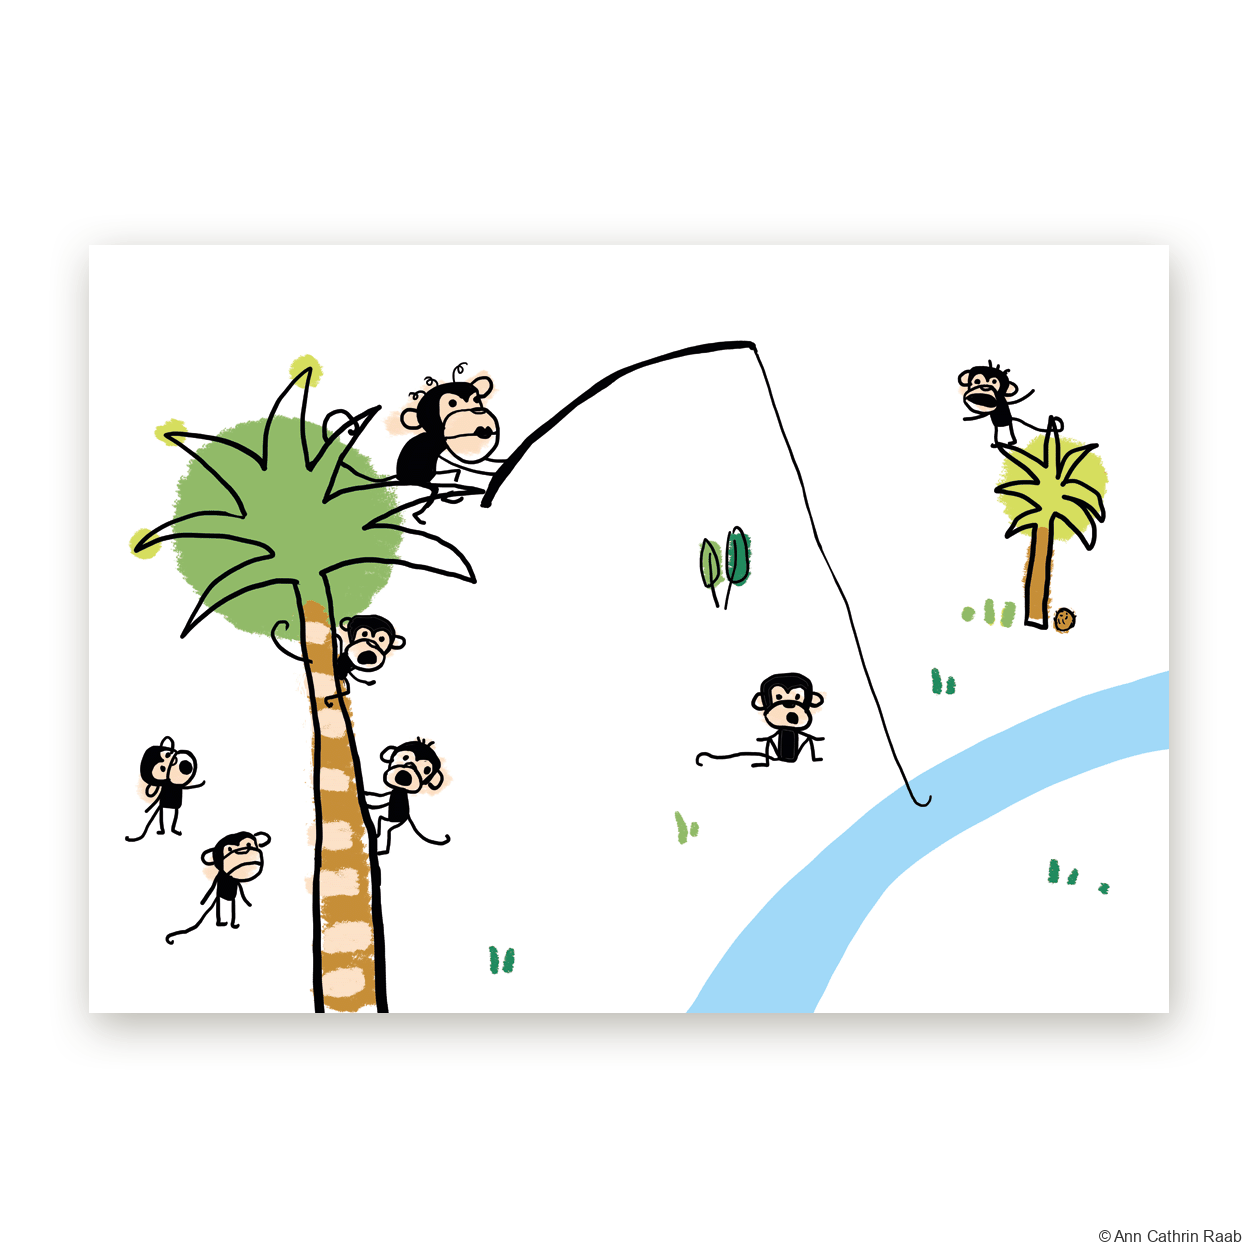 Skizzen für Buch nach dem Lied “Die Affen rasen durch den Wald"